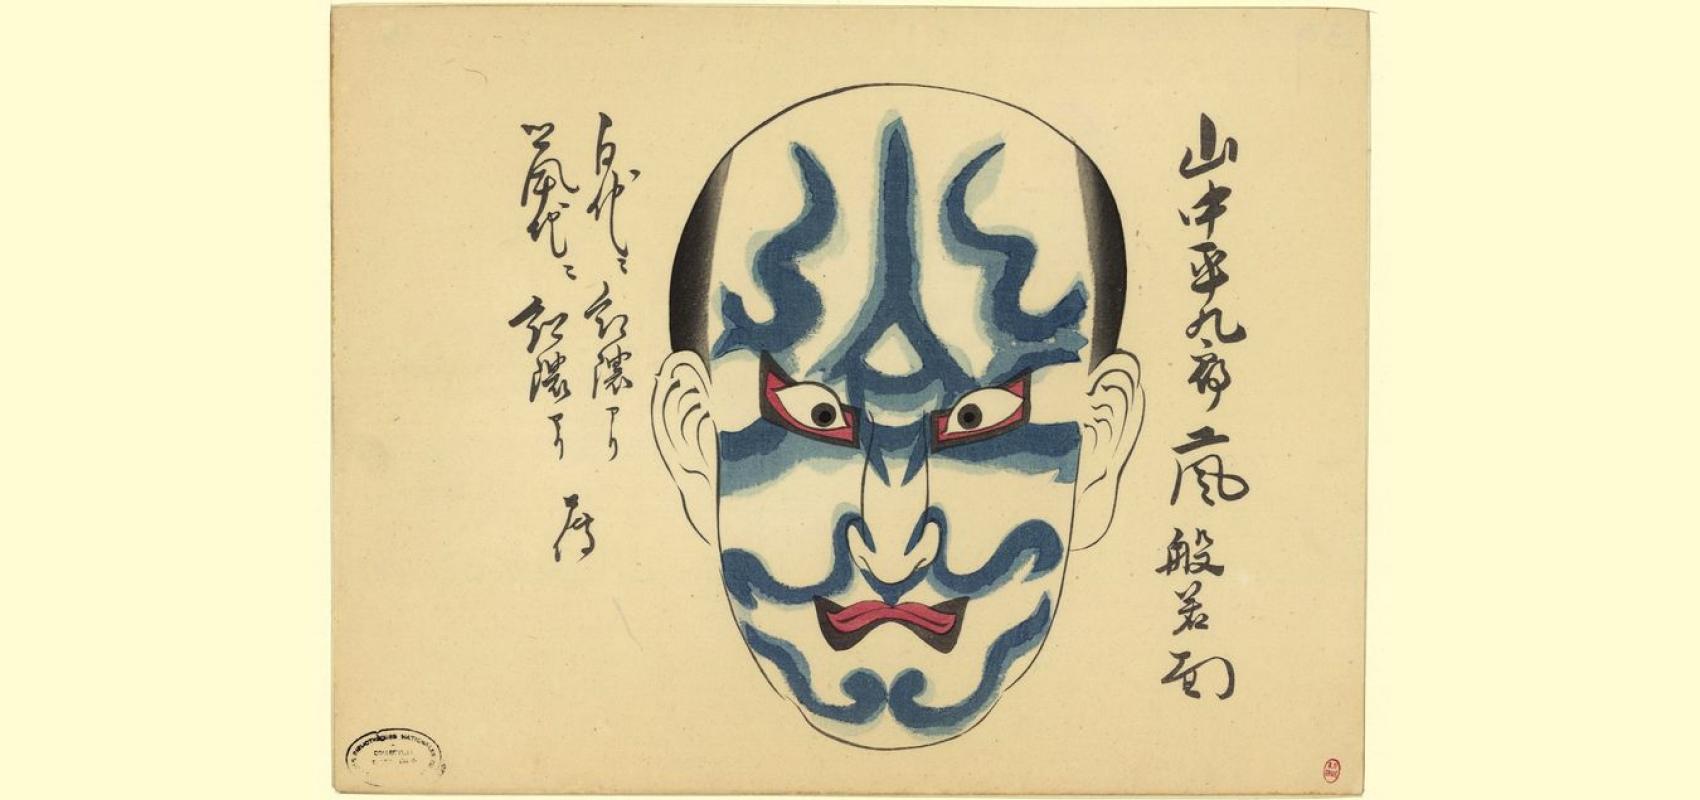 Estampe japonaise, maquillage des acteurs de kabuki, Fonds Edward Gordon Craig -  - BnF, Département des arts du spectacle